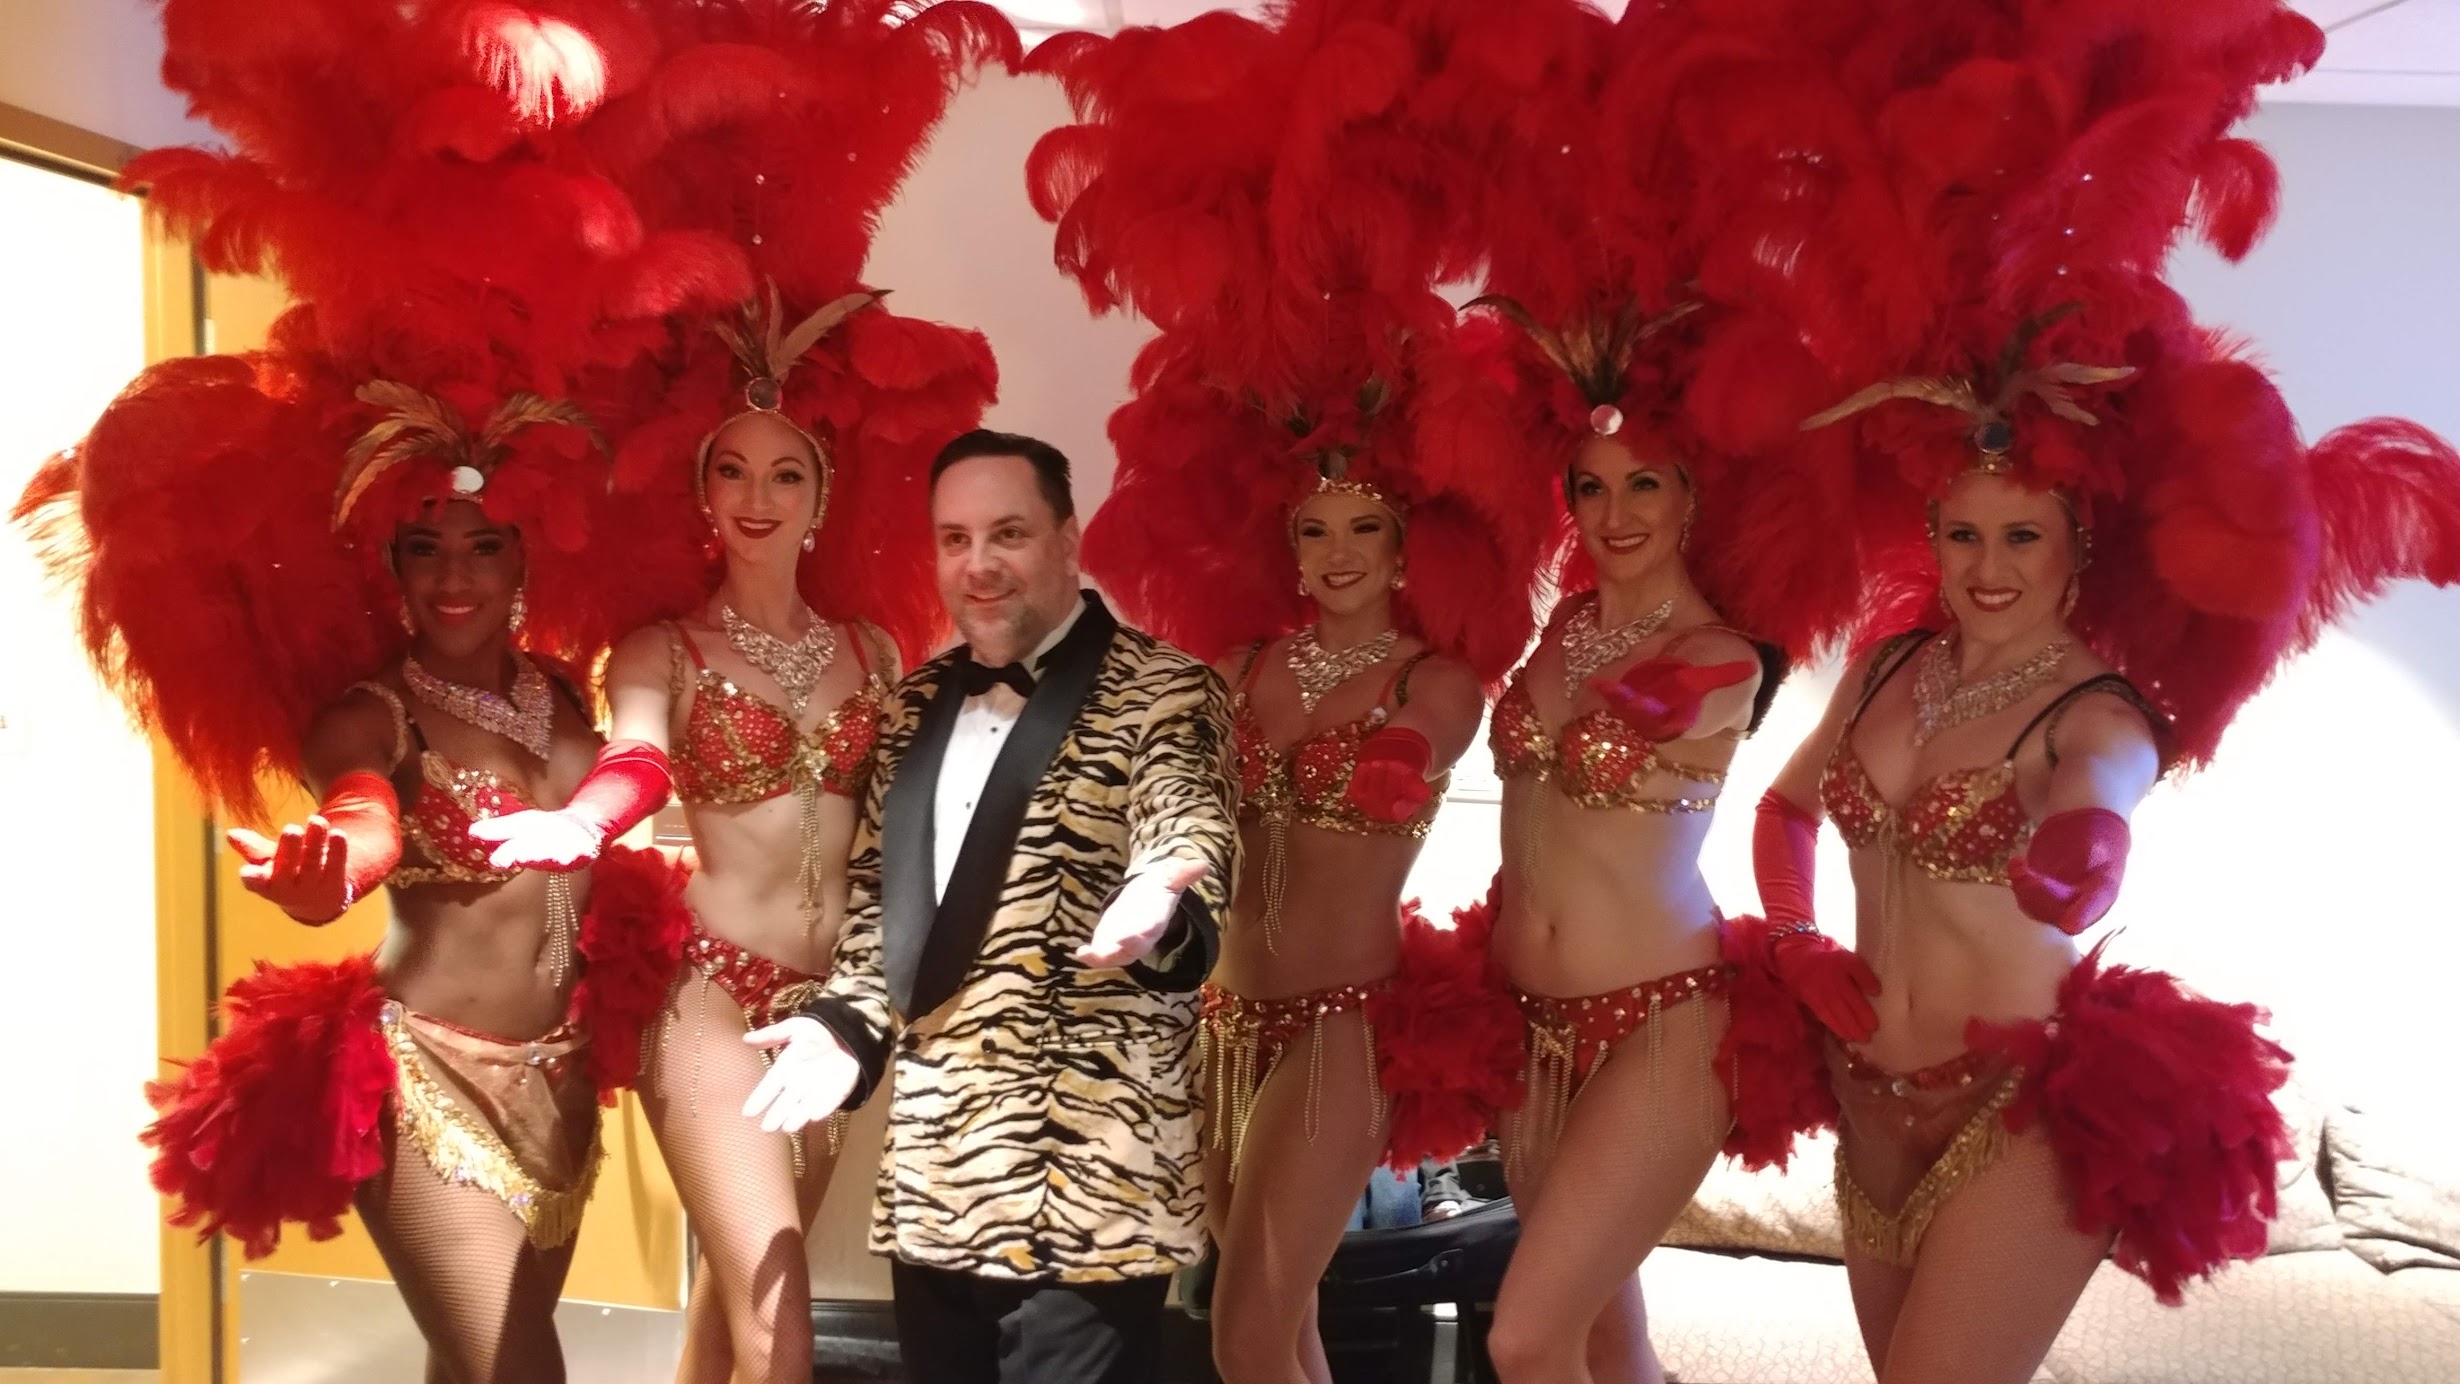 Las Vegas Showgirls for Hire - Premier Showgirls